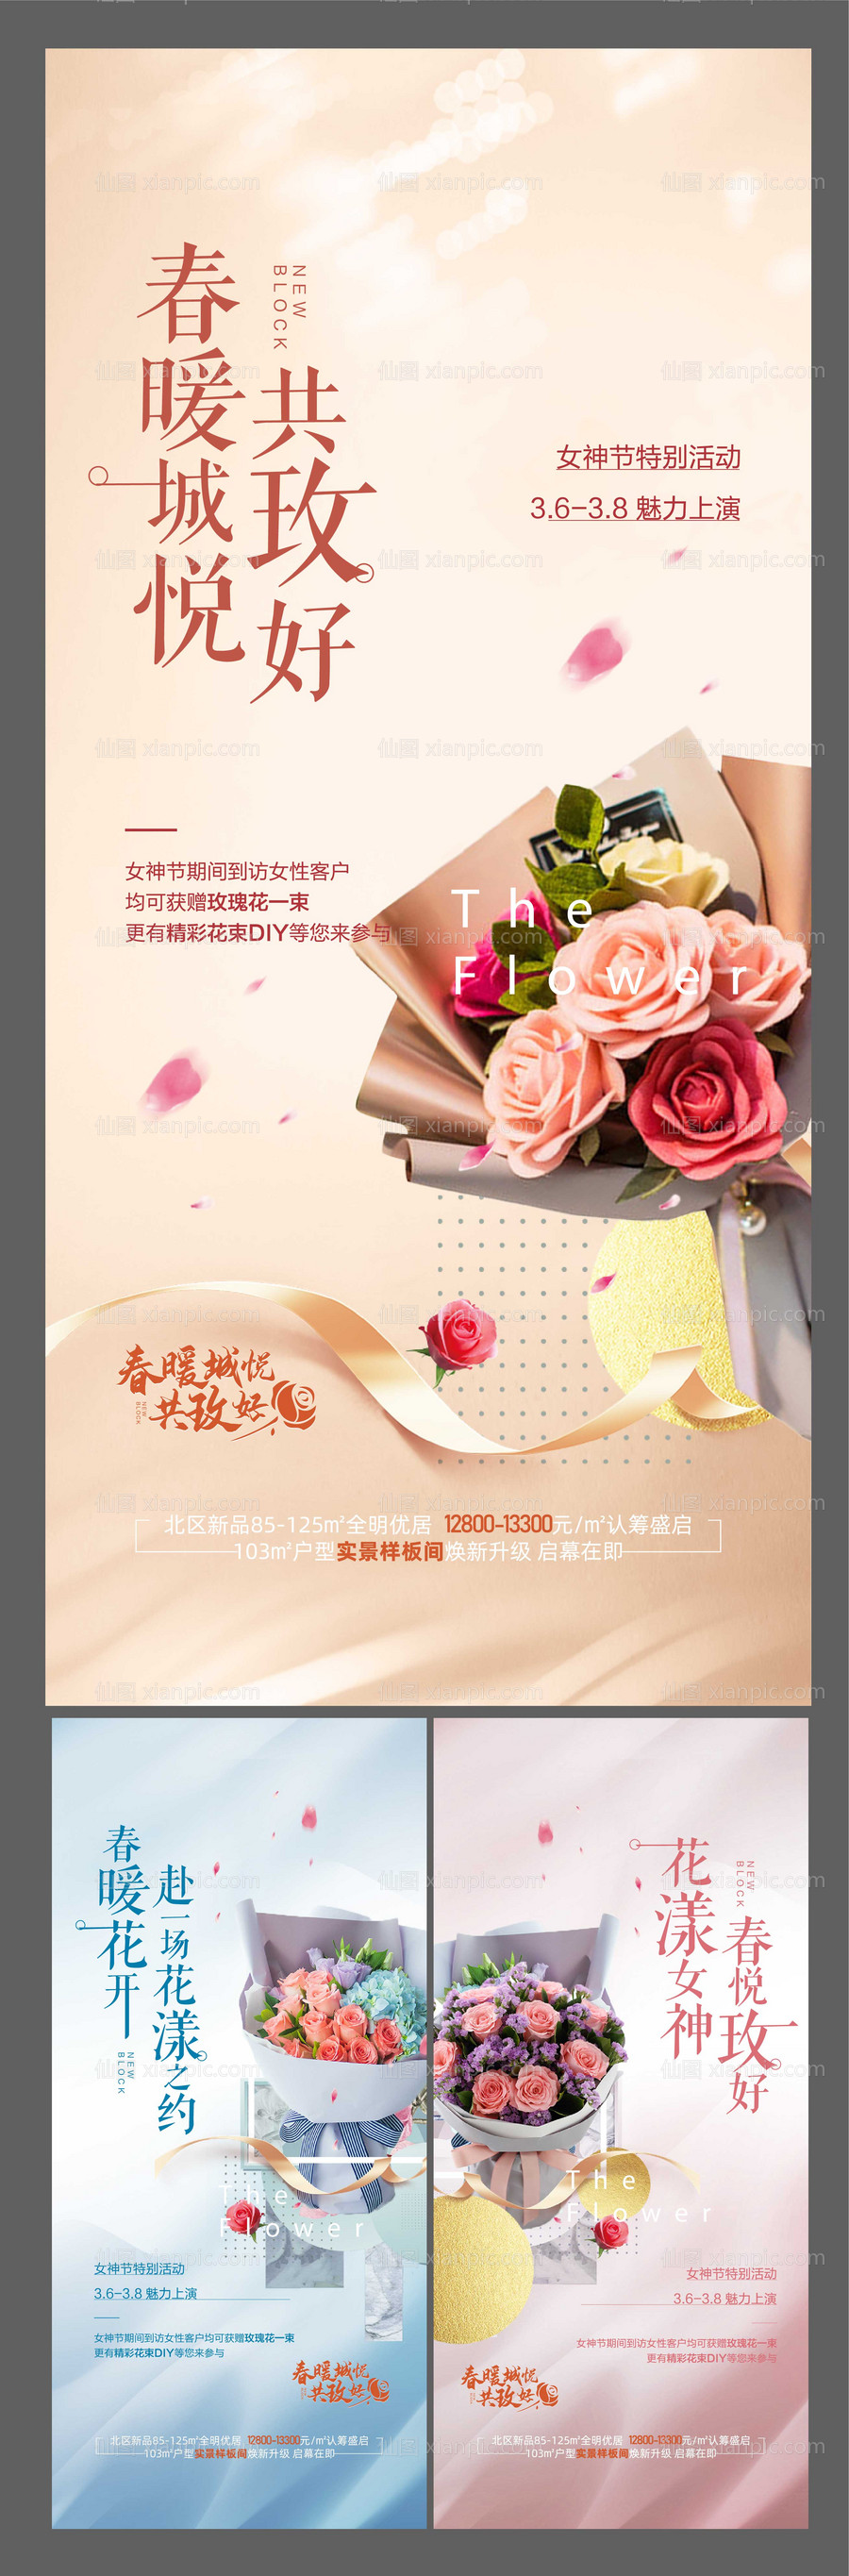 素材乐-春季女神节玫瑰花暖场活动海报